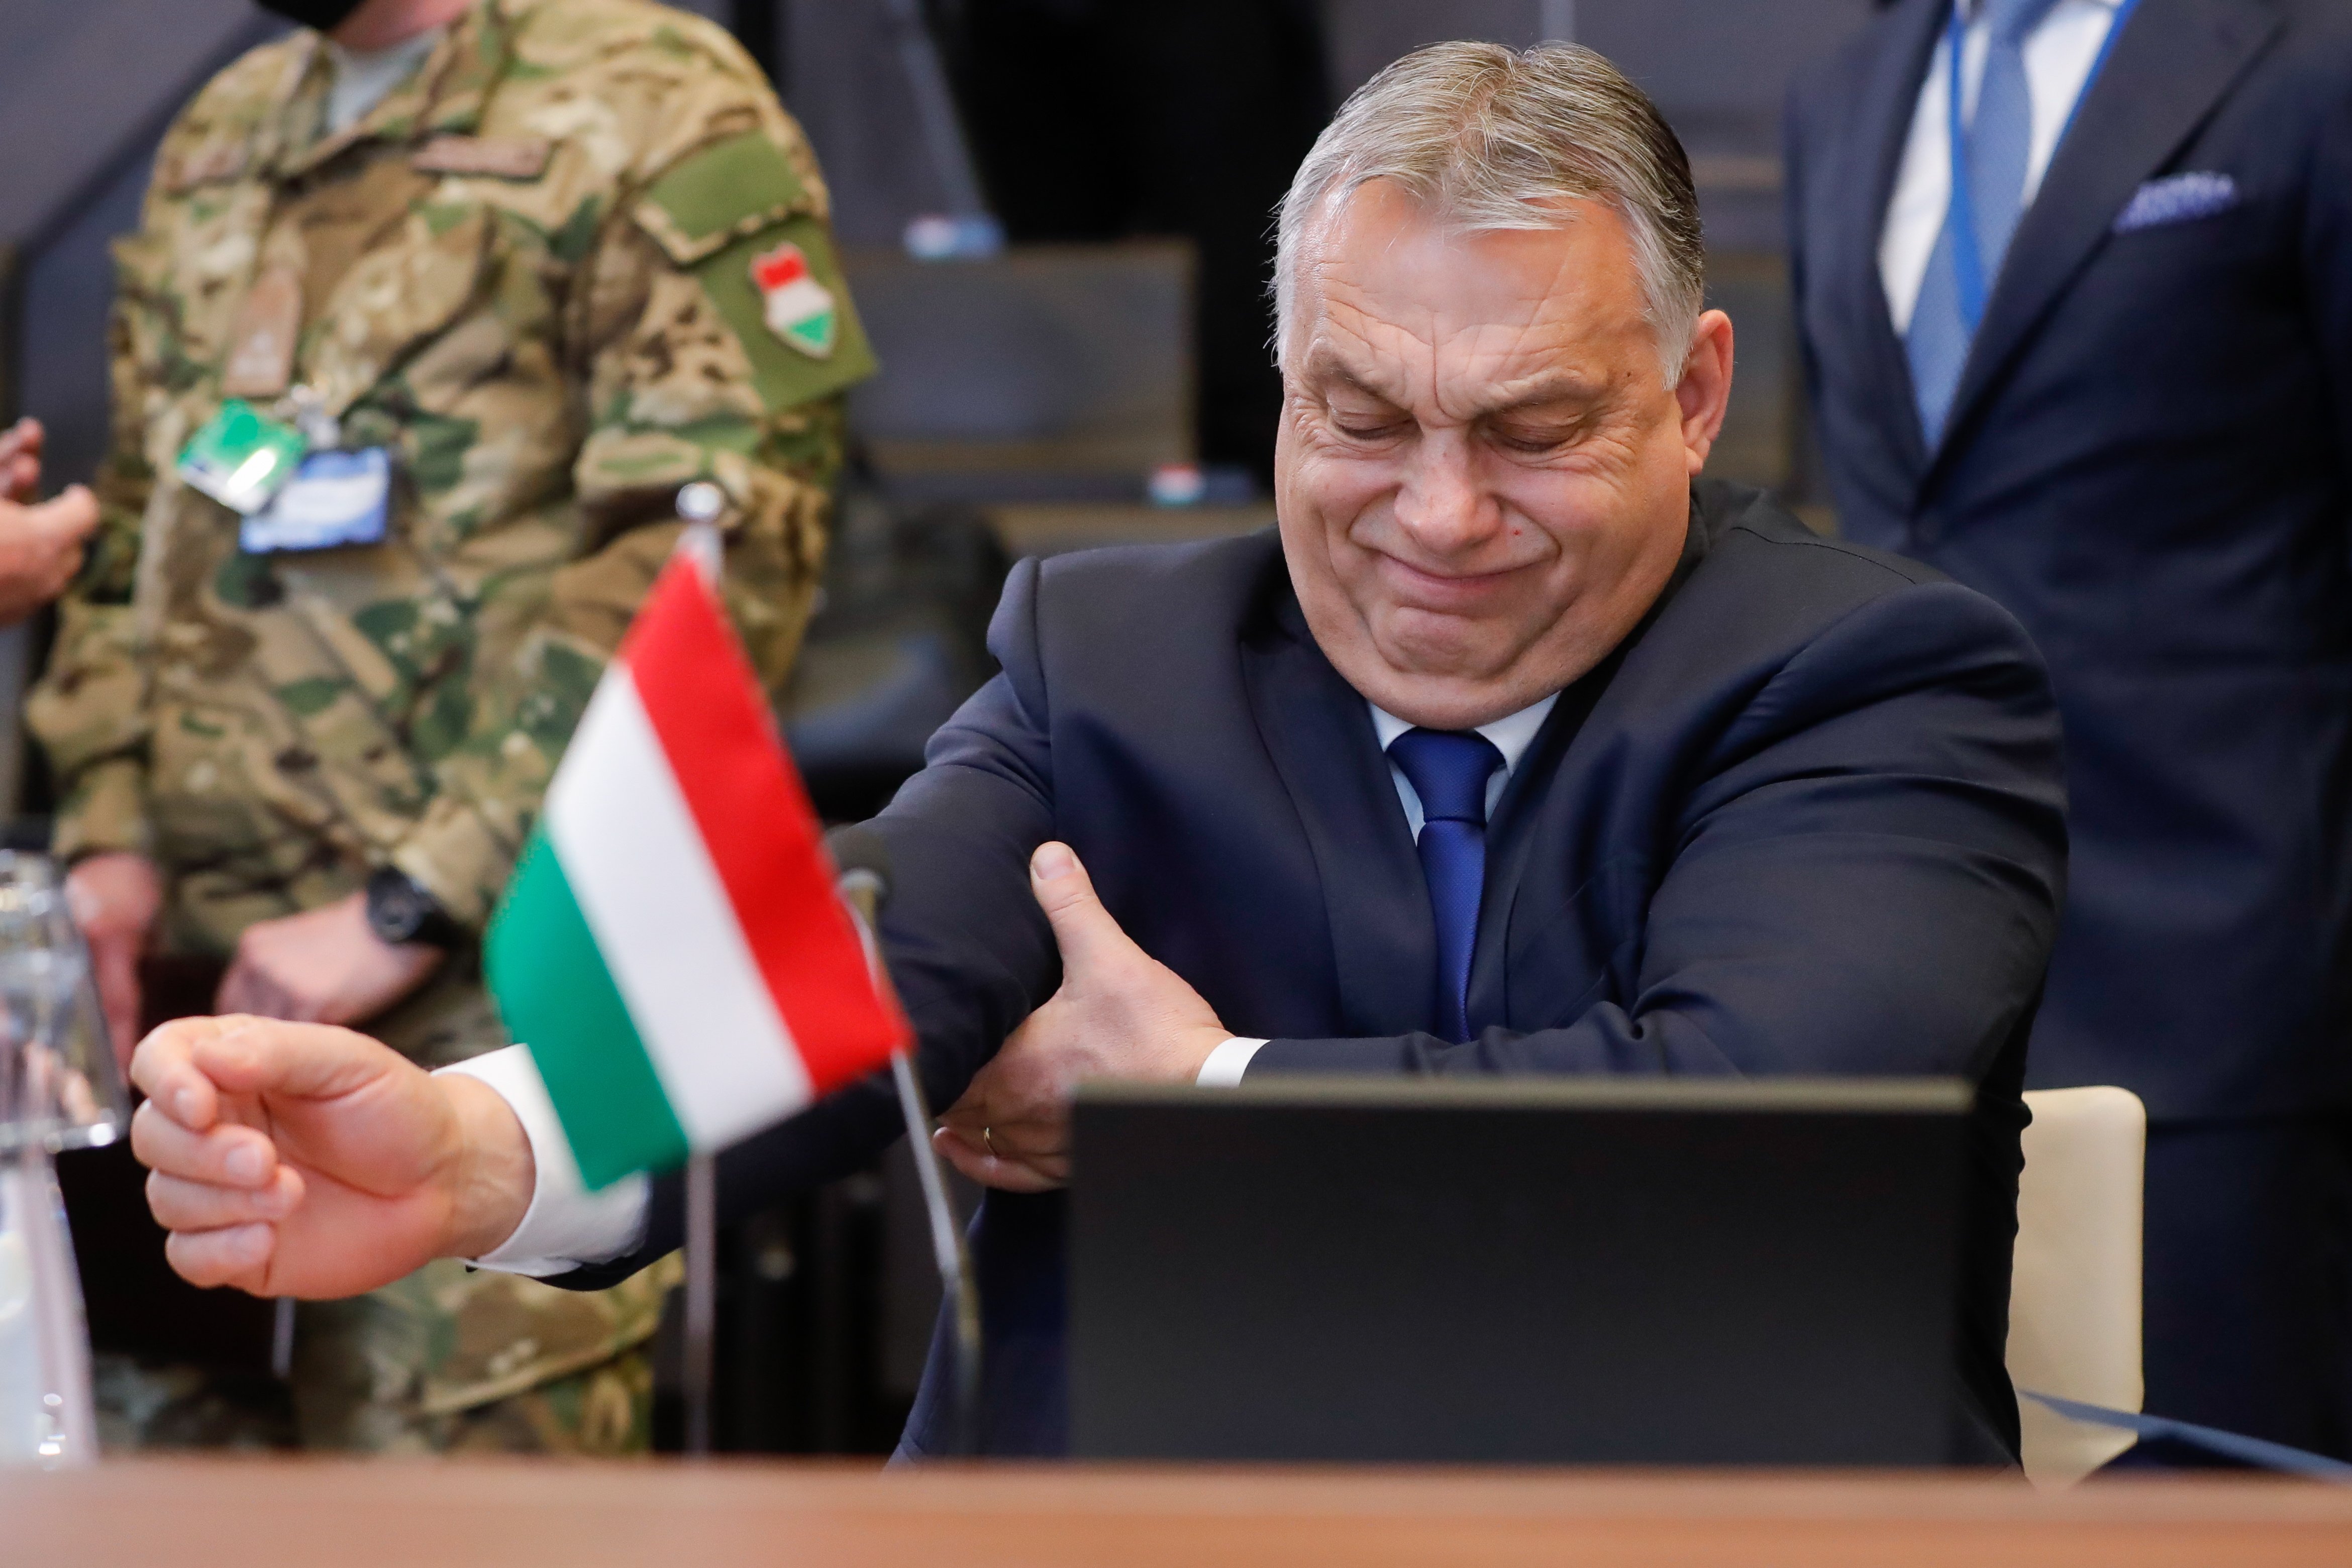 El sisè paquet de sancions de la UE a Rússia tira endavant amb el suport d'Hongria